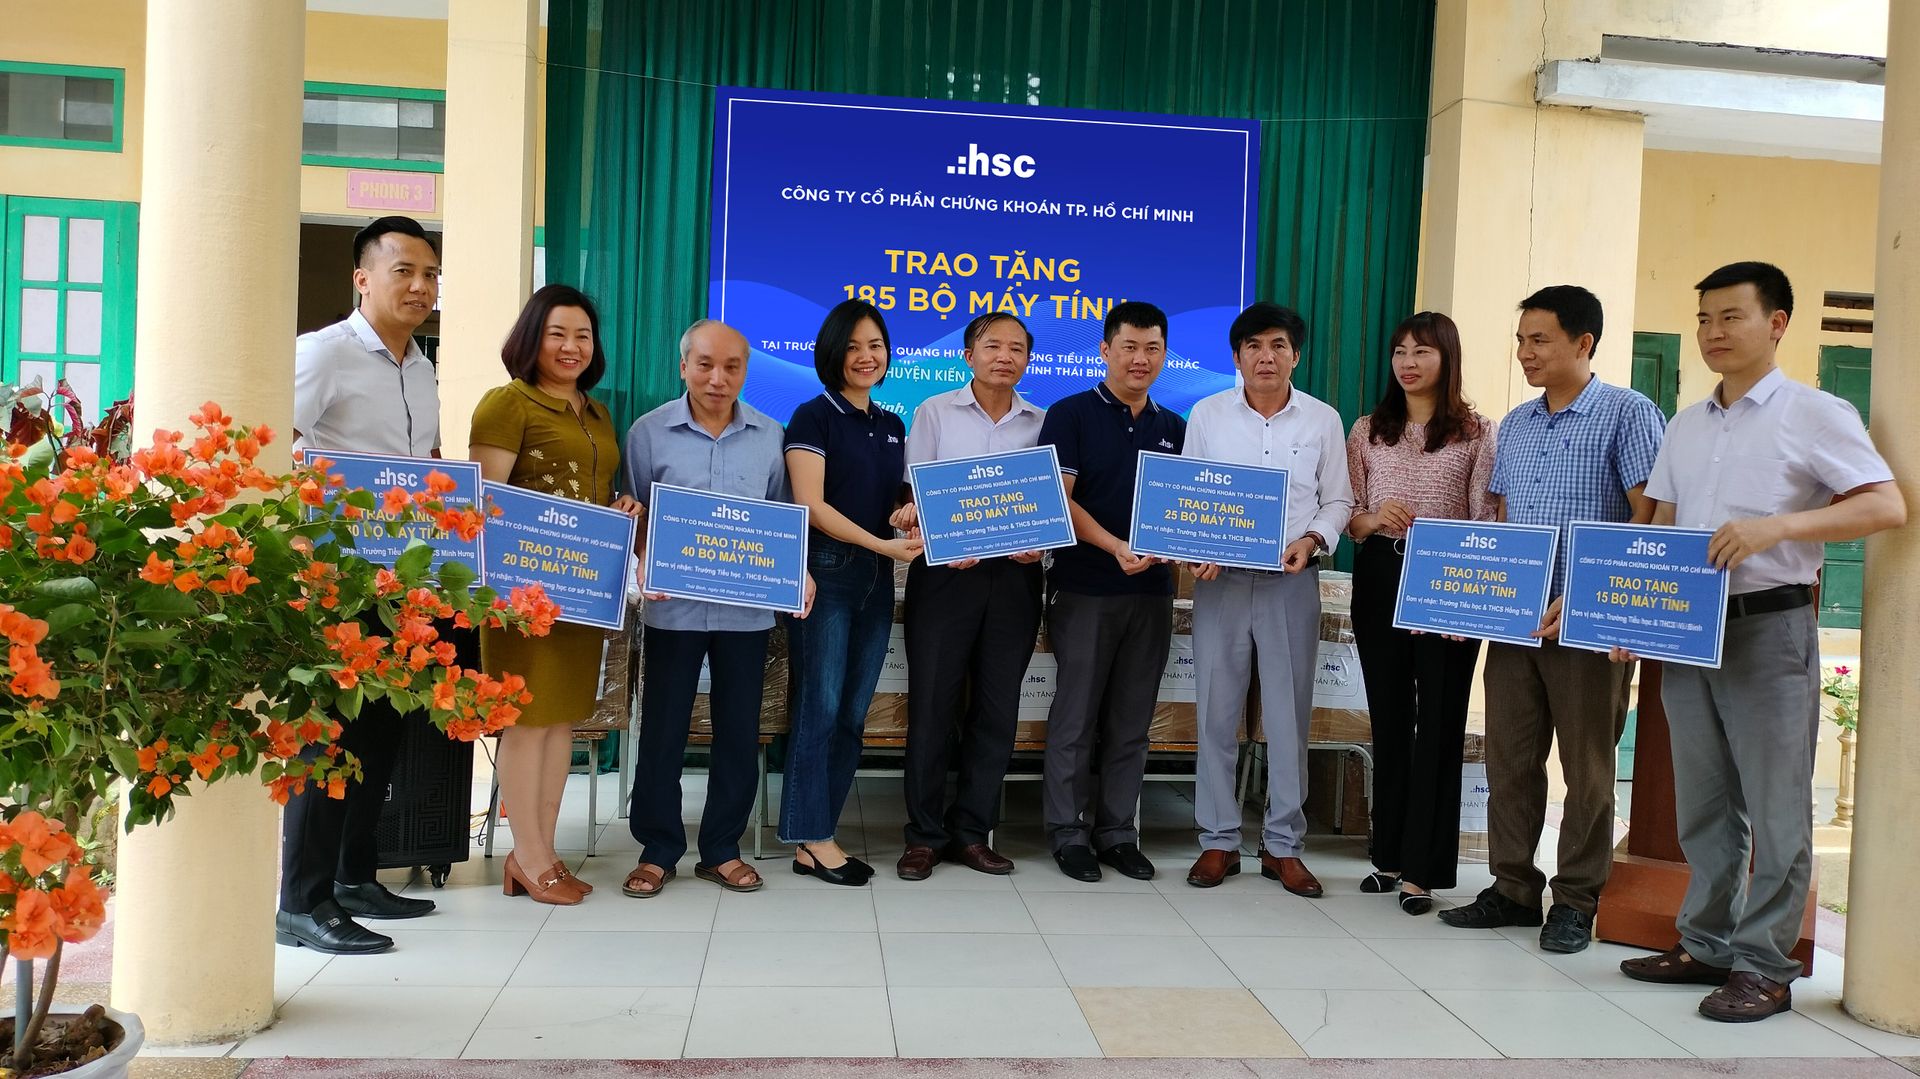 HSC trao tặng 185 máy tính cho các trường học tại huyện Kiến Xương, Thái Bình